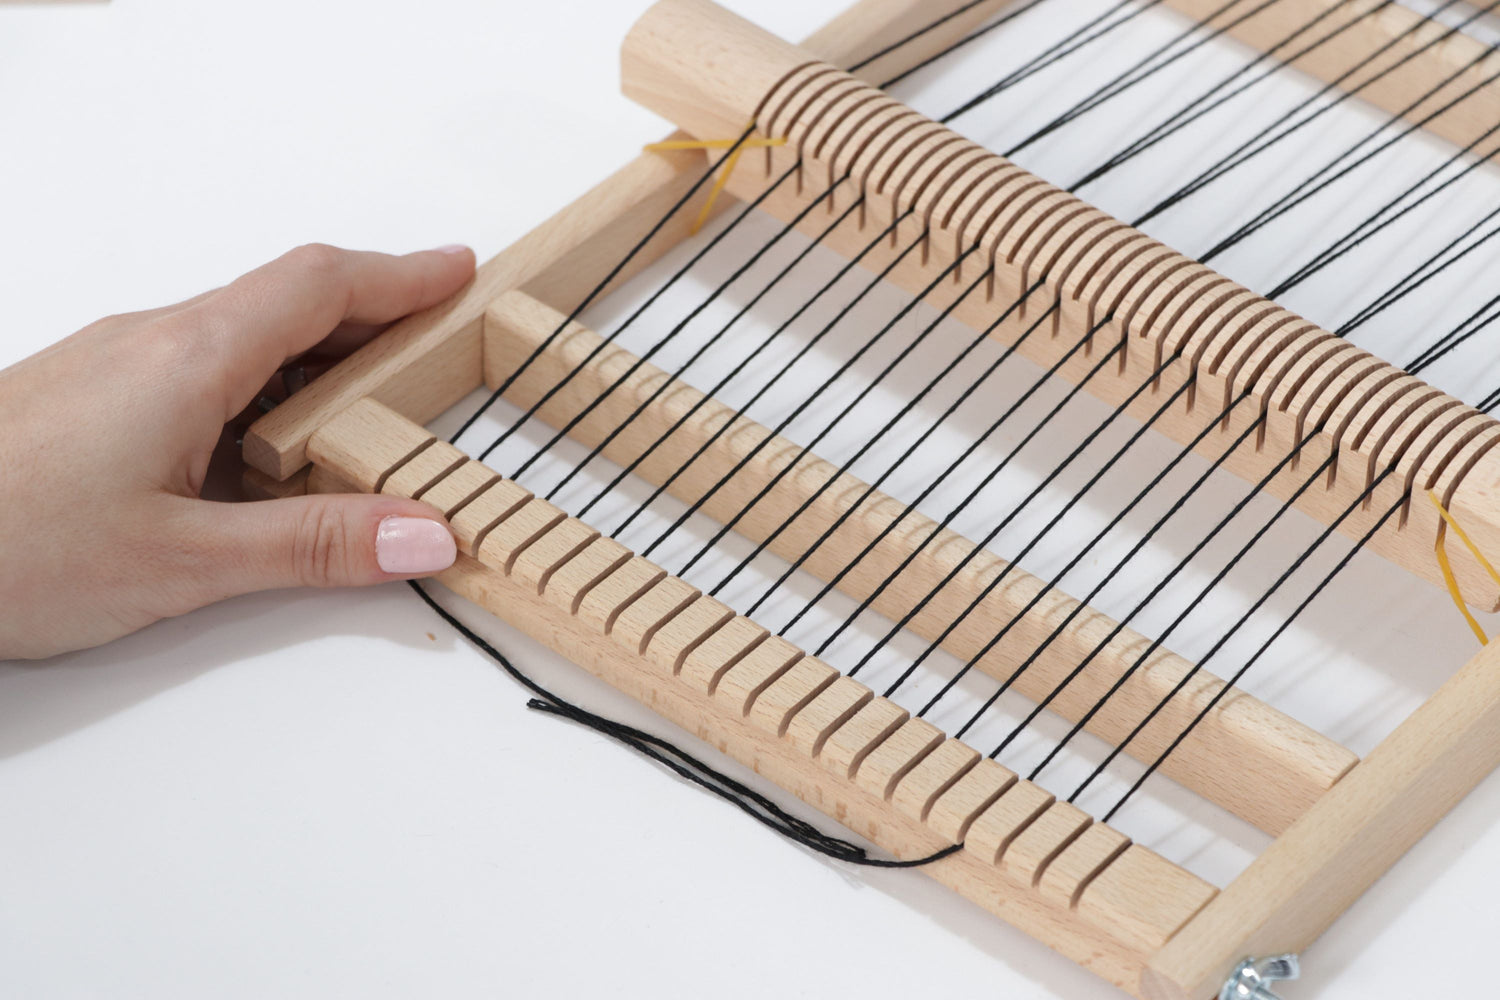 How to warp your weaving loom?